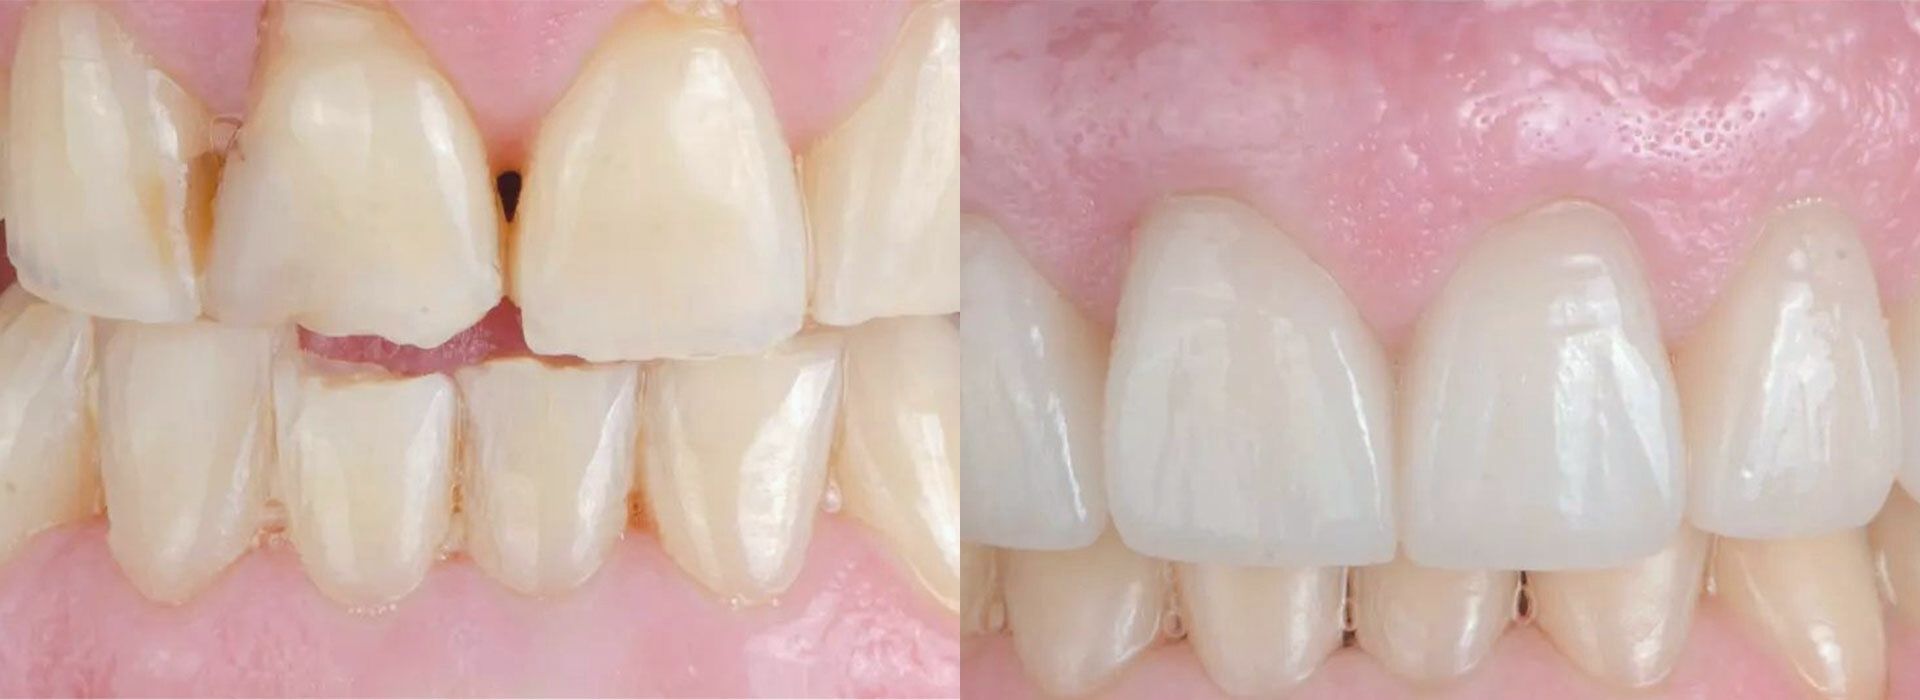 Direkte/indirekte Veneers und Zahnumformungen